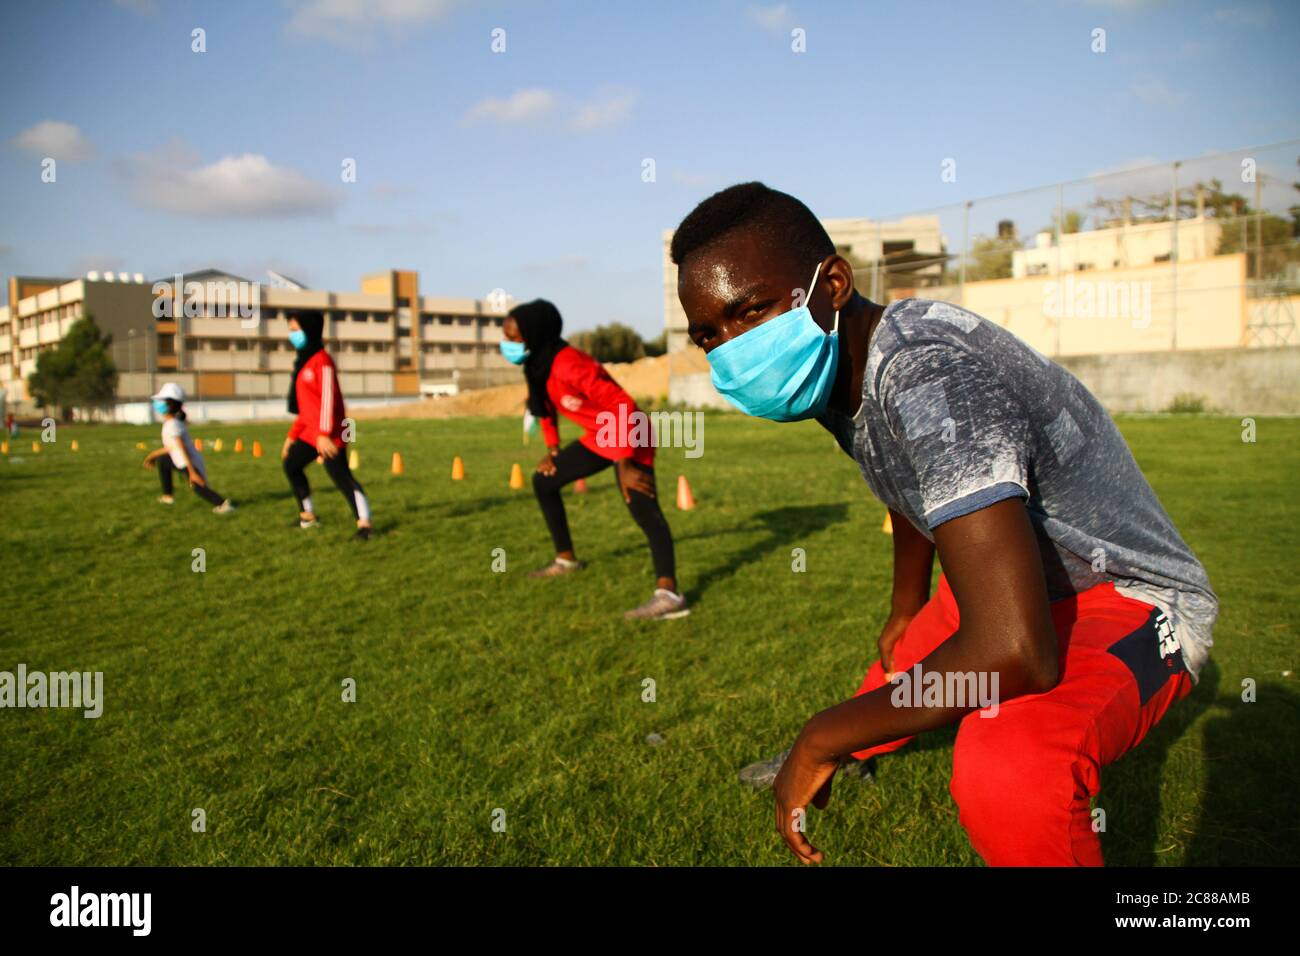 21. Juli 2020: Gaza, Palästina. 21. Juli 2020. Palästinensische Kinder und Jugendliche besuchen eine Sportveranstaltung im Freien in der Stadt Beit Lahia im nördlichen Gazastreifen. Die Teilnehmer führten Übungen zur Verbesserung ihrer körperlichen Fähigkeiten wie Kraft, Beweglichkeit und Ausdauer durch und trugen Gesichtsmasken als Schutzmaßnahme gegen die Ausbreitung des Coronavirus. Die Veranstaltung wurde vom Beit Lahia Youth Club organisiert, um die Sportpraxis und die Entwicklung internationaler Leichtathletik-Fähigkeiten von Kindern und Jugendlichen aus Gazan zu unterstützen.Quelle: Ahmad Hasaballah/IMAGESLIVE/ZUMA Wire/Alamy Live News Stockfoto